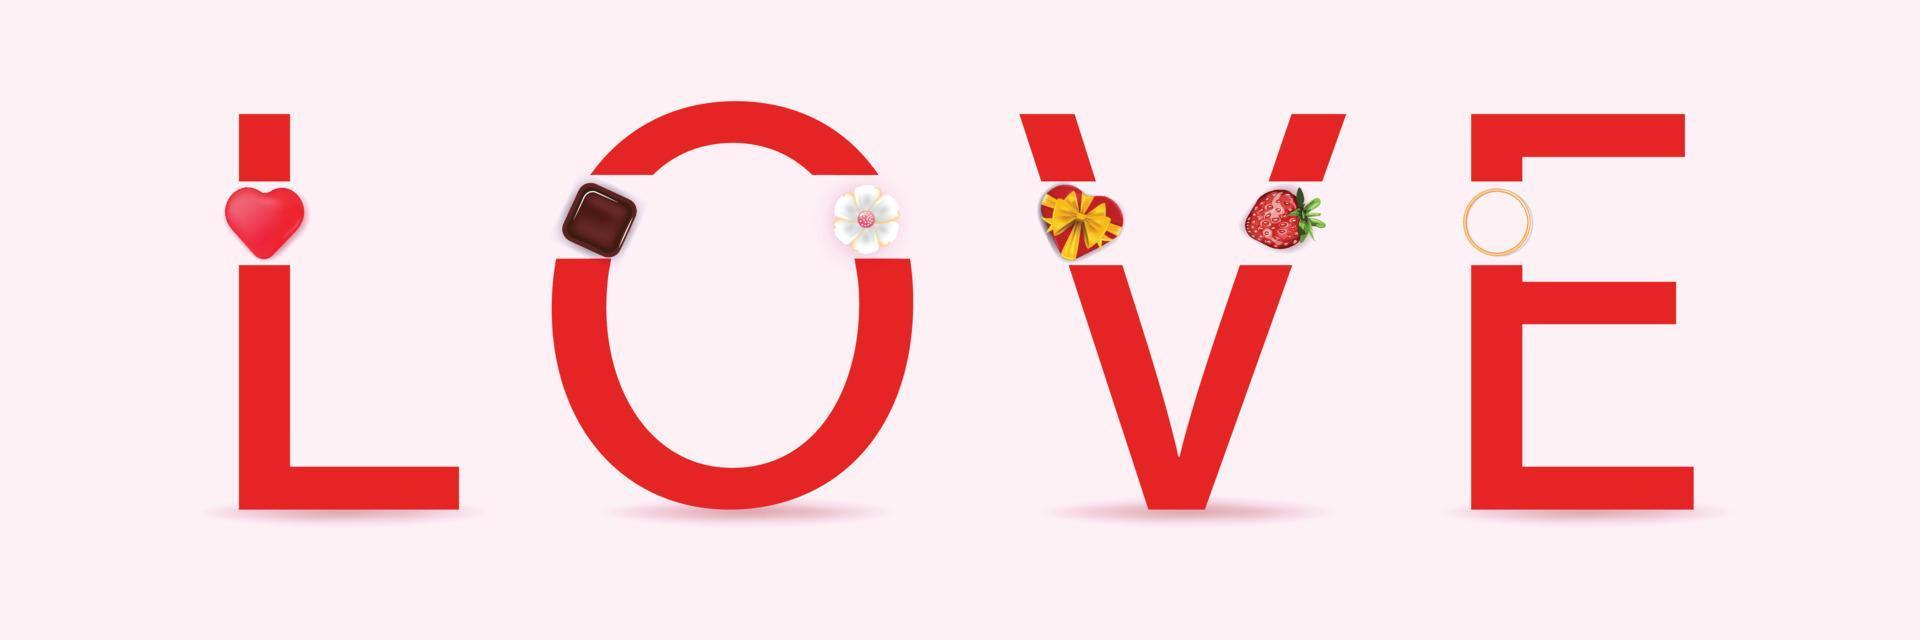 banner con elementi di san valentino e la parola amore. modello per banner, carte, pubblicità, inviti, sfondi. illustrazione vettoriale. vettore